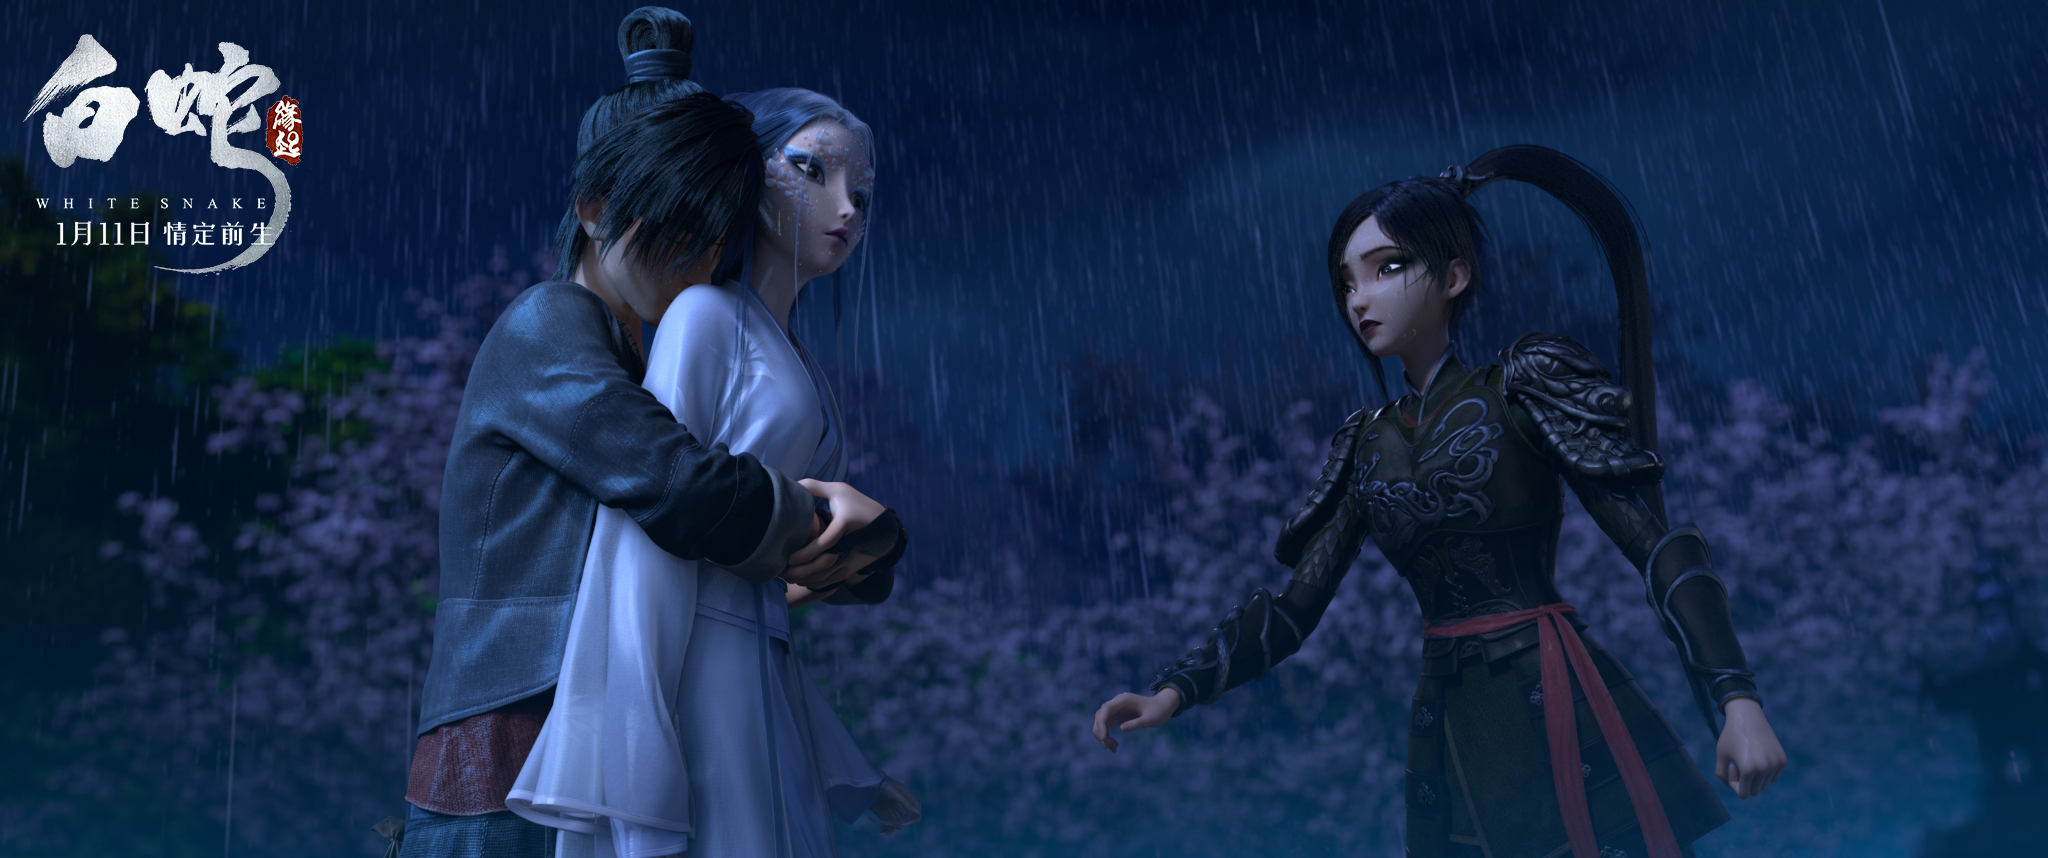 电影《白蛇:缘起》故事发生在白素贞与许仙初会的五百年前.